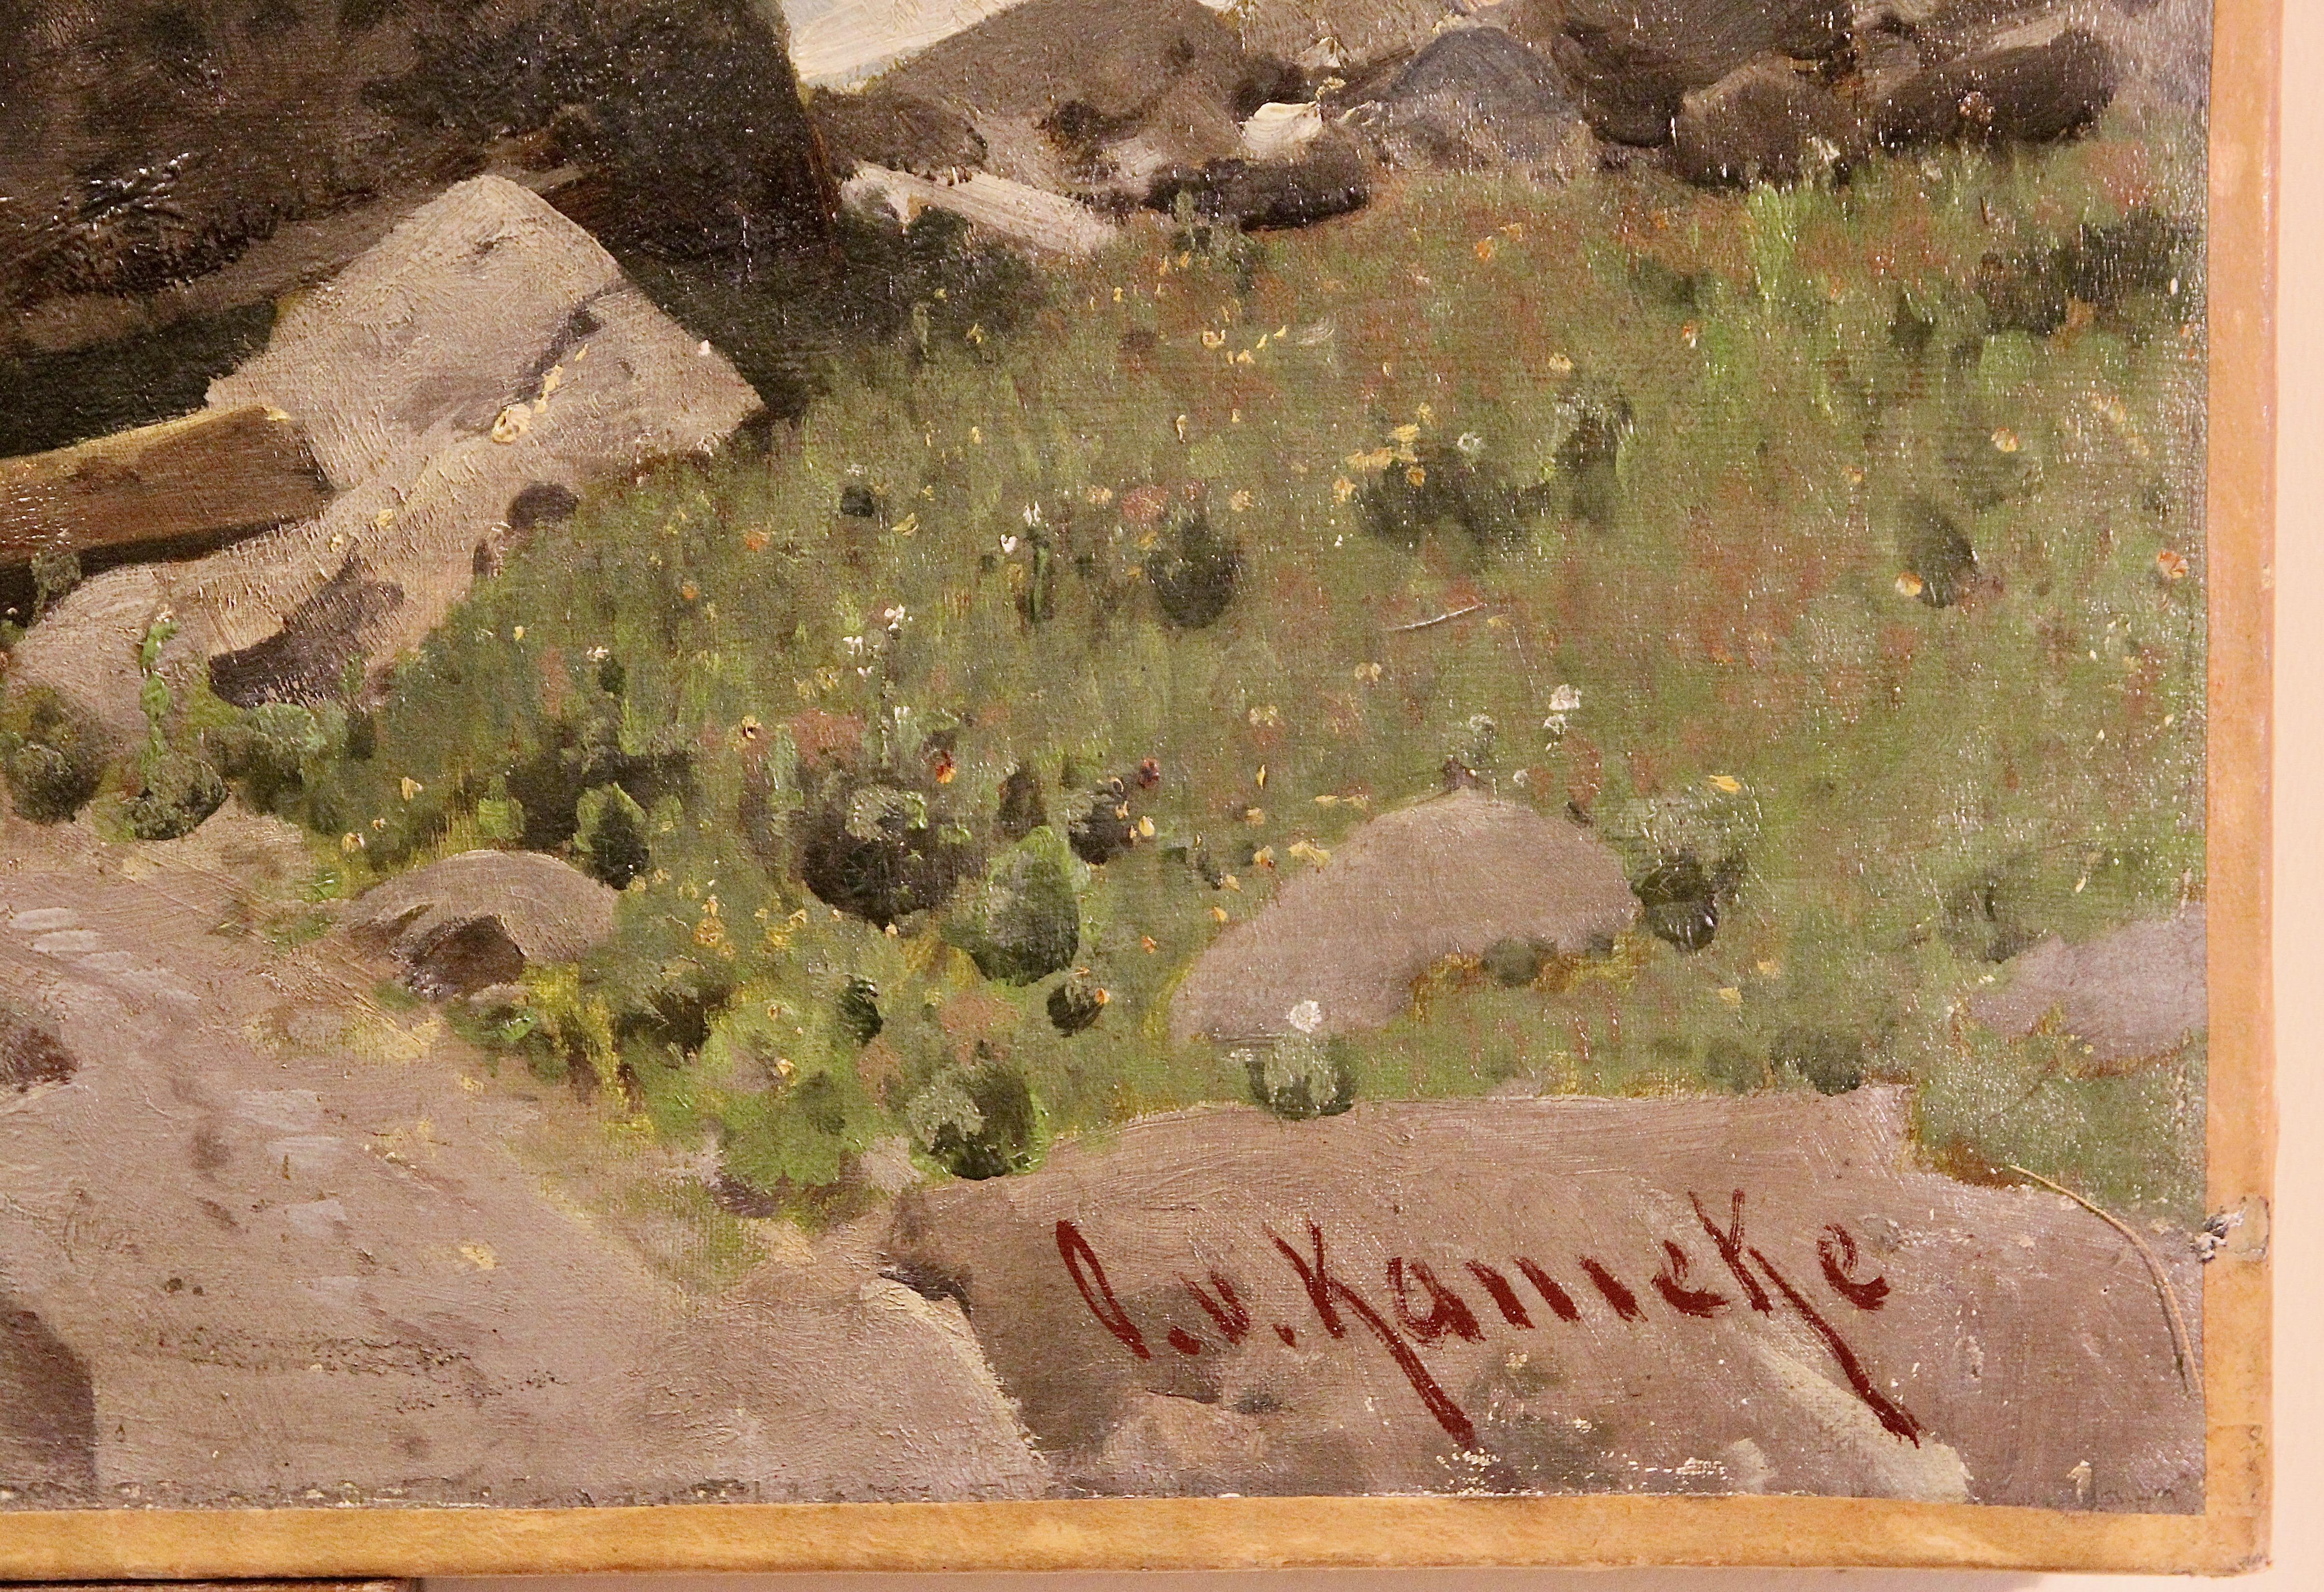 Hochalpine Landschaft, Alpen. Ölgemälde von Otto Werner Henning von Kameke.


Kameke war bereits Hauptmann, als er sich 1860 der Kunst zuwandte, nach Rom ging und sich dort zwei Jahre lang dem Studium der Natur widmete. 
Dann trat er in die